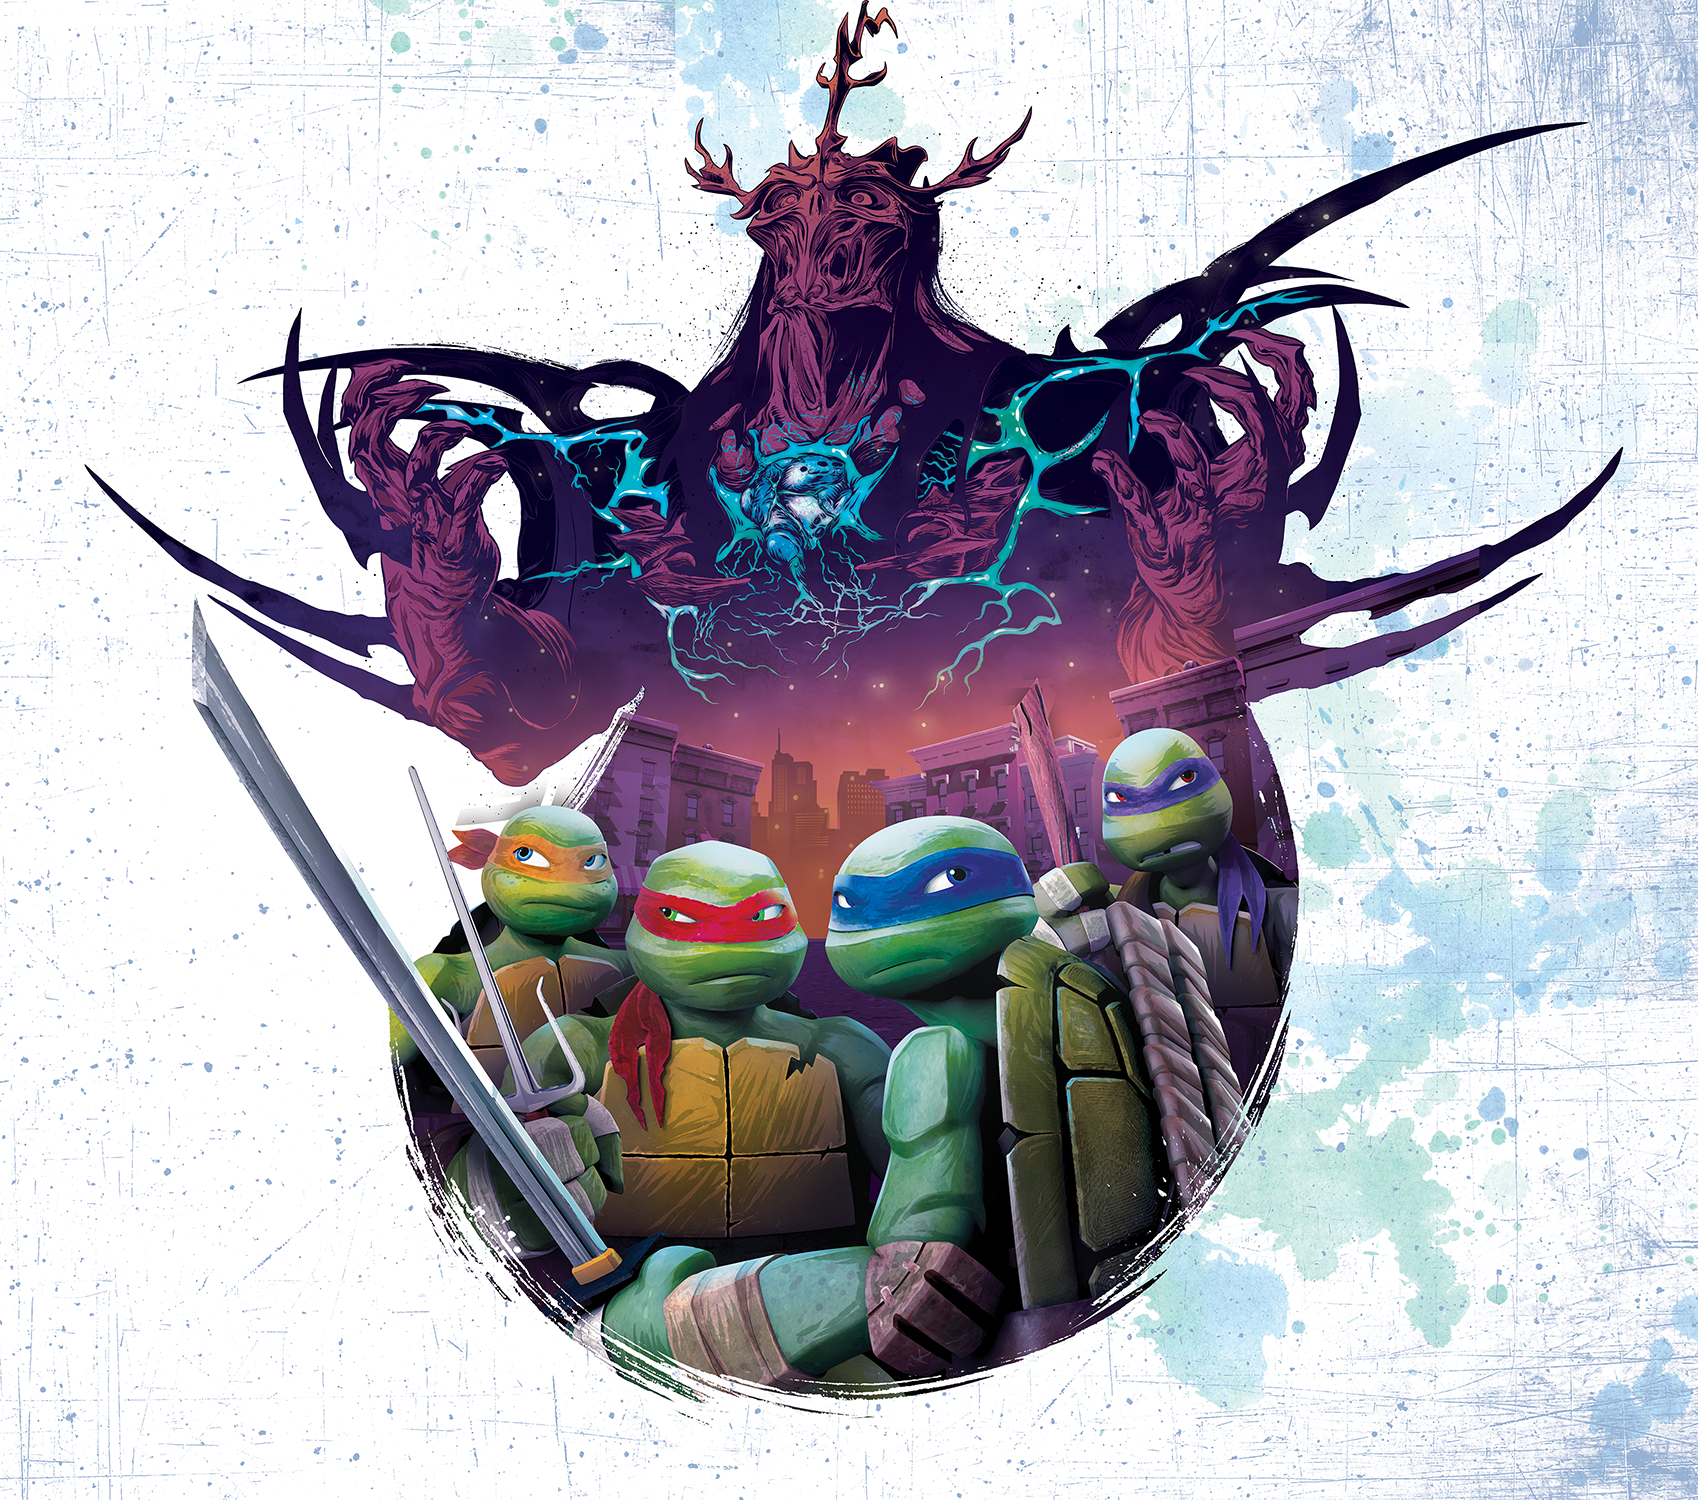 Teenage Mutant Ninja Turtles: Tales Of The Teenage Mutant Ninja Turtles  Super Shredder (dvd) : Target